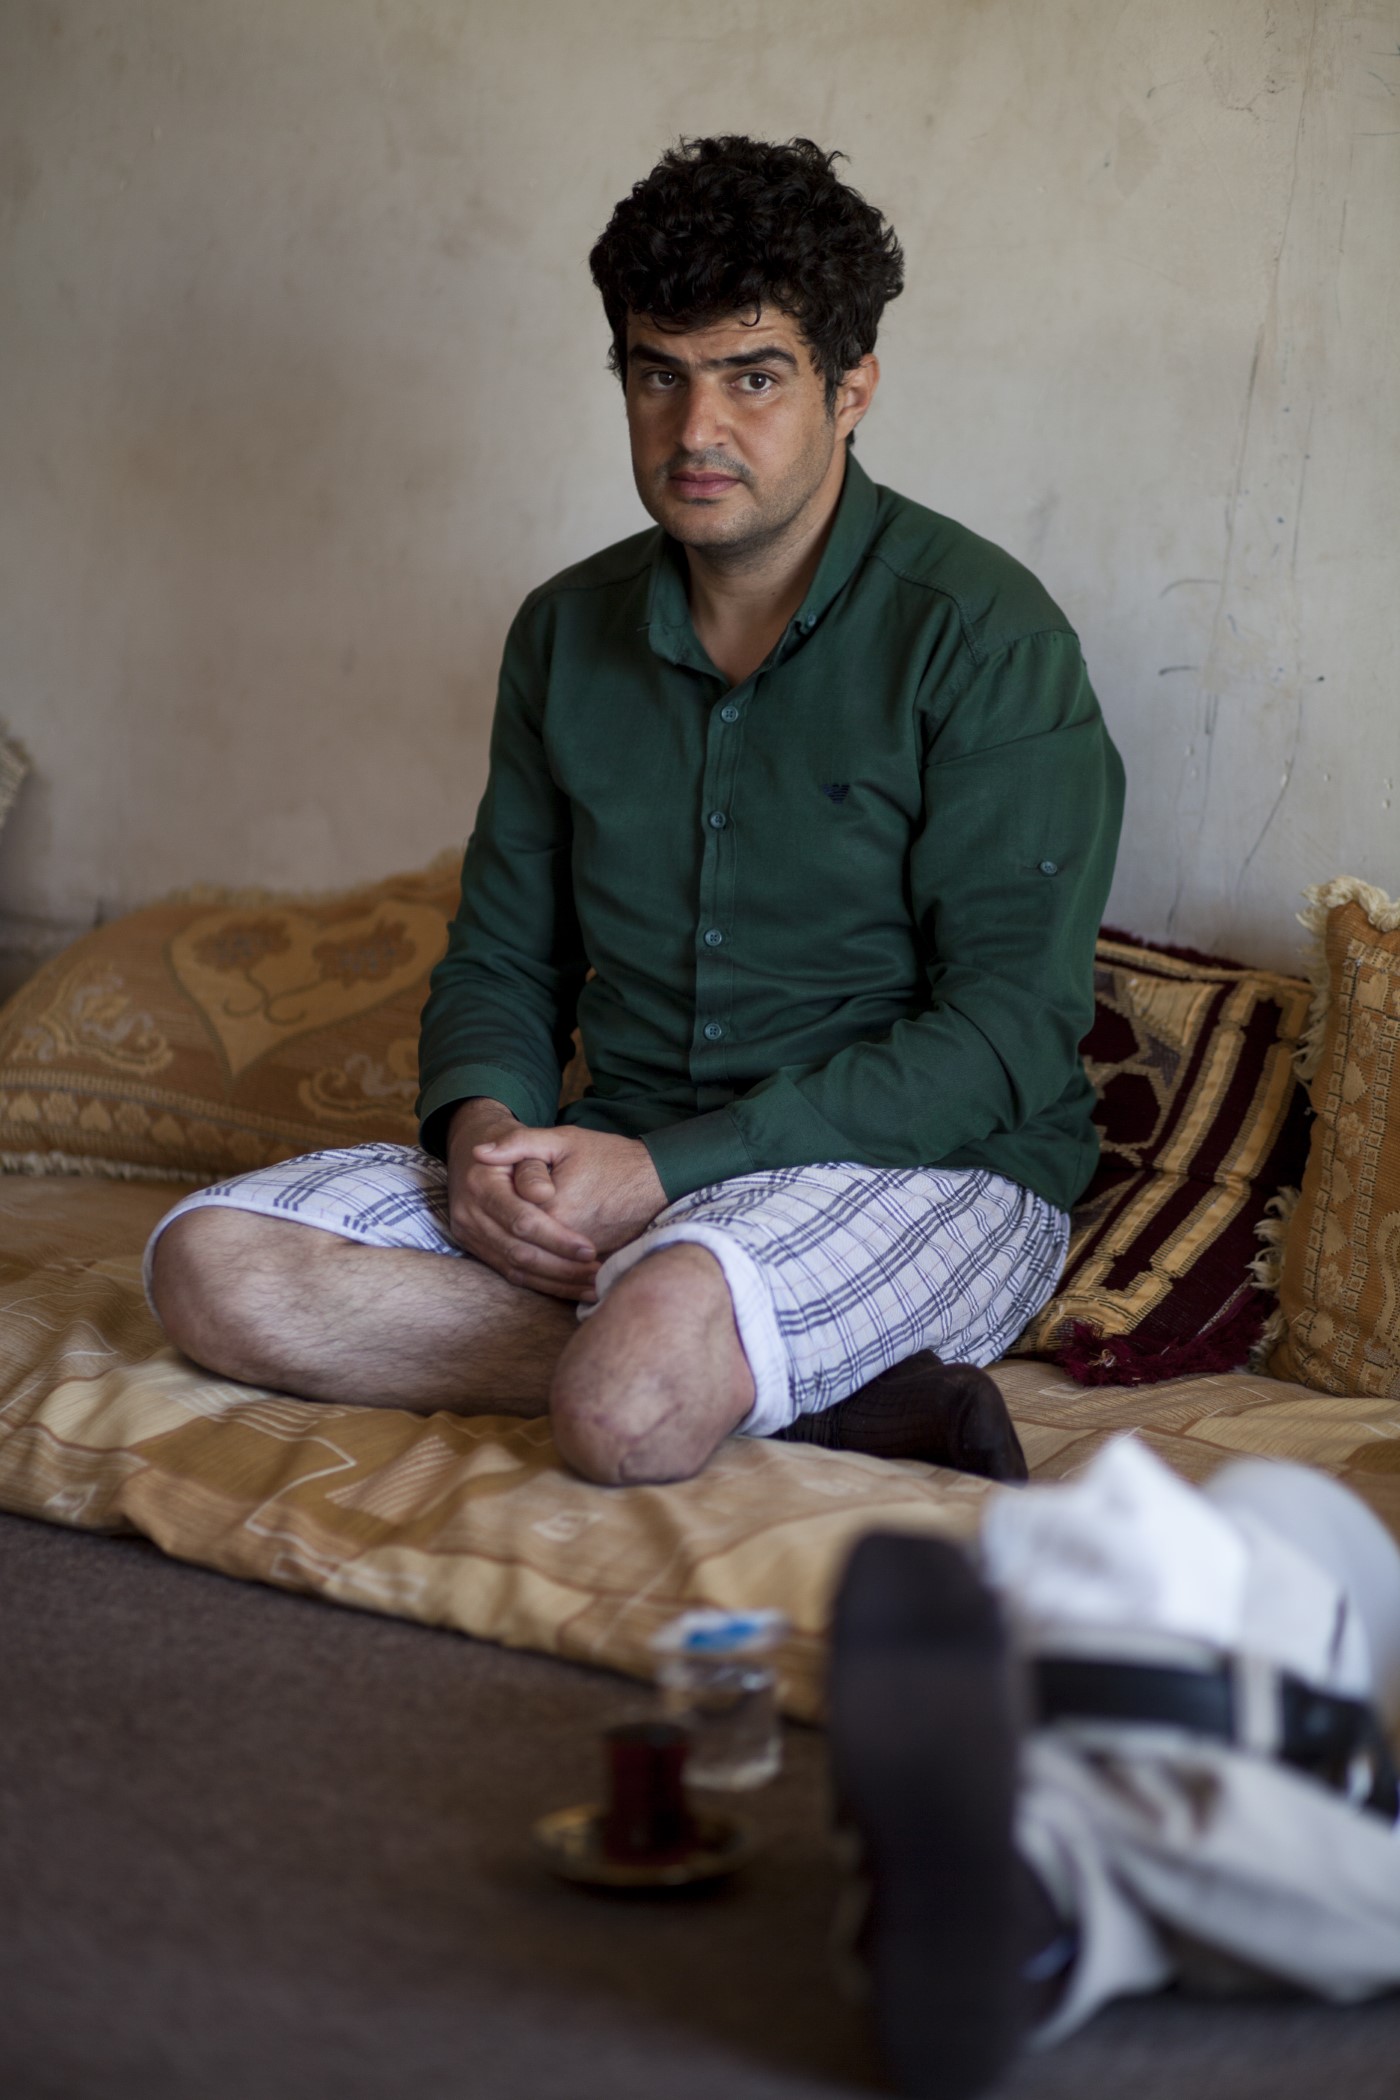 Saman (33), ex Peshmerga i metge, ens mostra la seva cama amputada per l'explosió d'una mina de l’Estat Islàmic mentre tornava de socórrer en una ambulància dos Peshmergas ferits a prop de Mossul l'any 2016. Va ser l'únic supervivent. Pramagran, Kurdistan, Iraq. 14 de maig de 2017